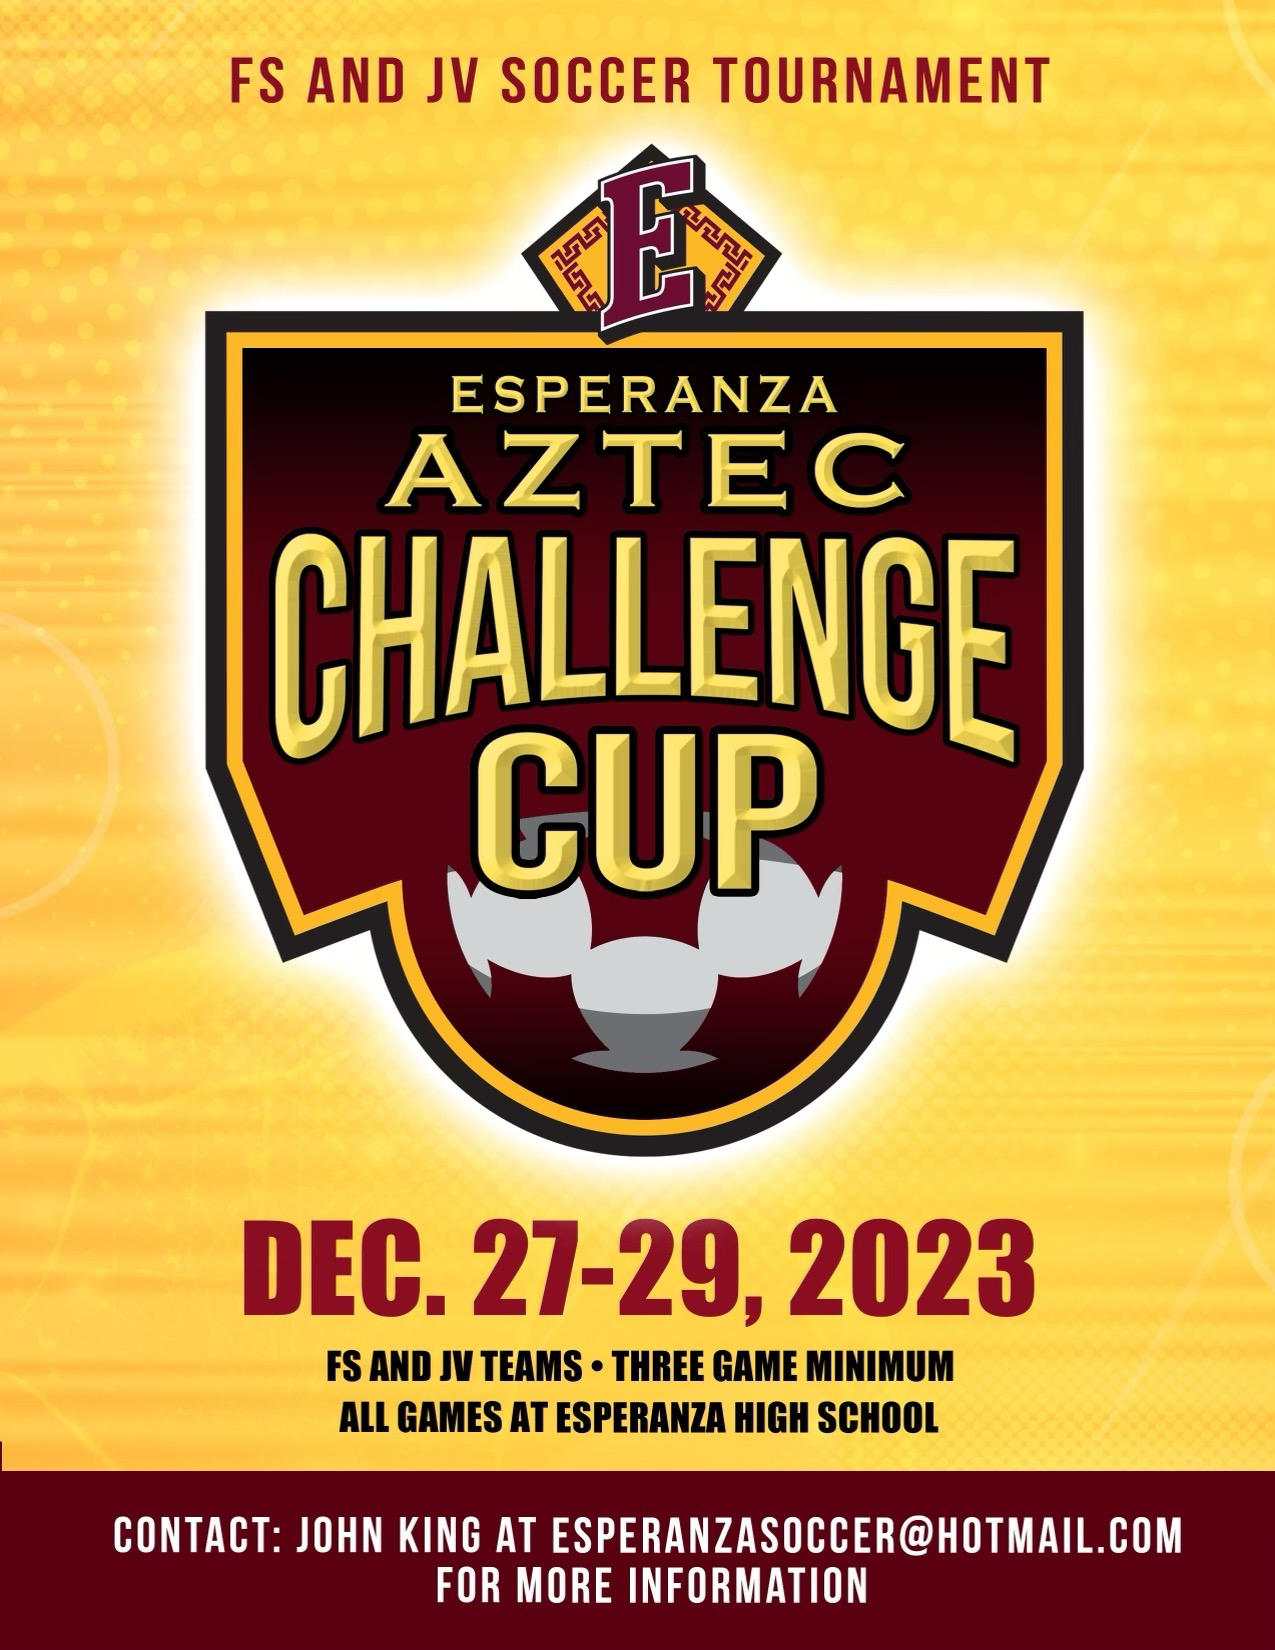 AZTEC CHALLENGE CUP